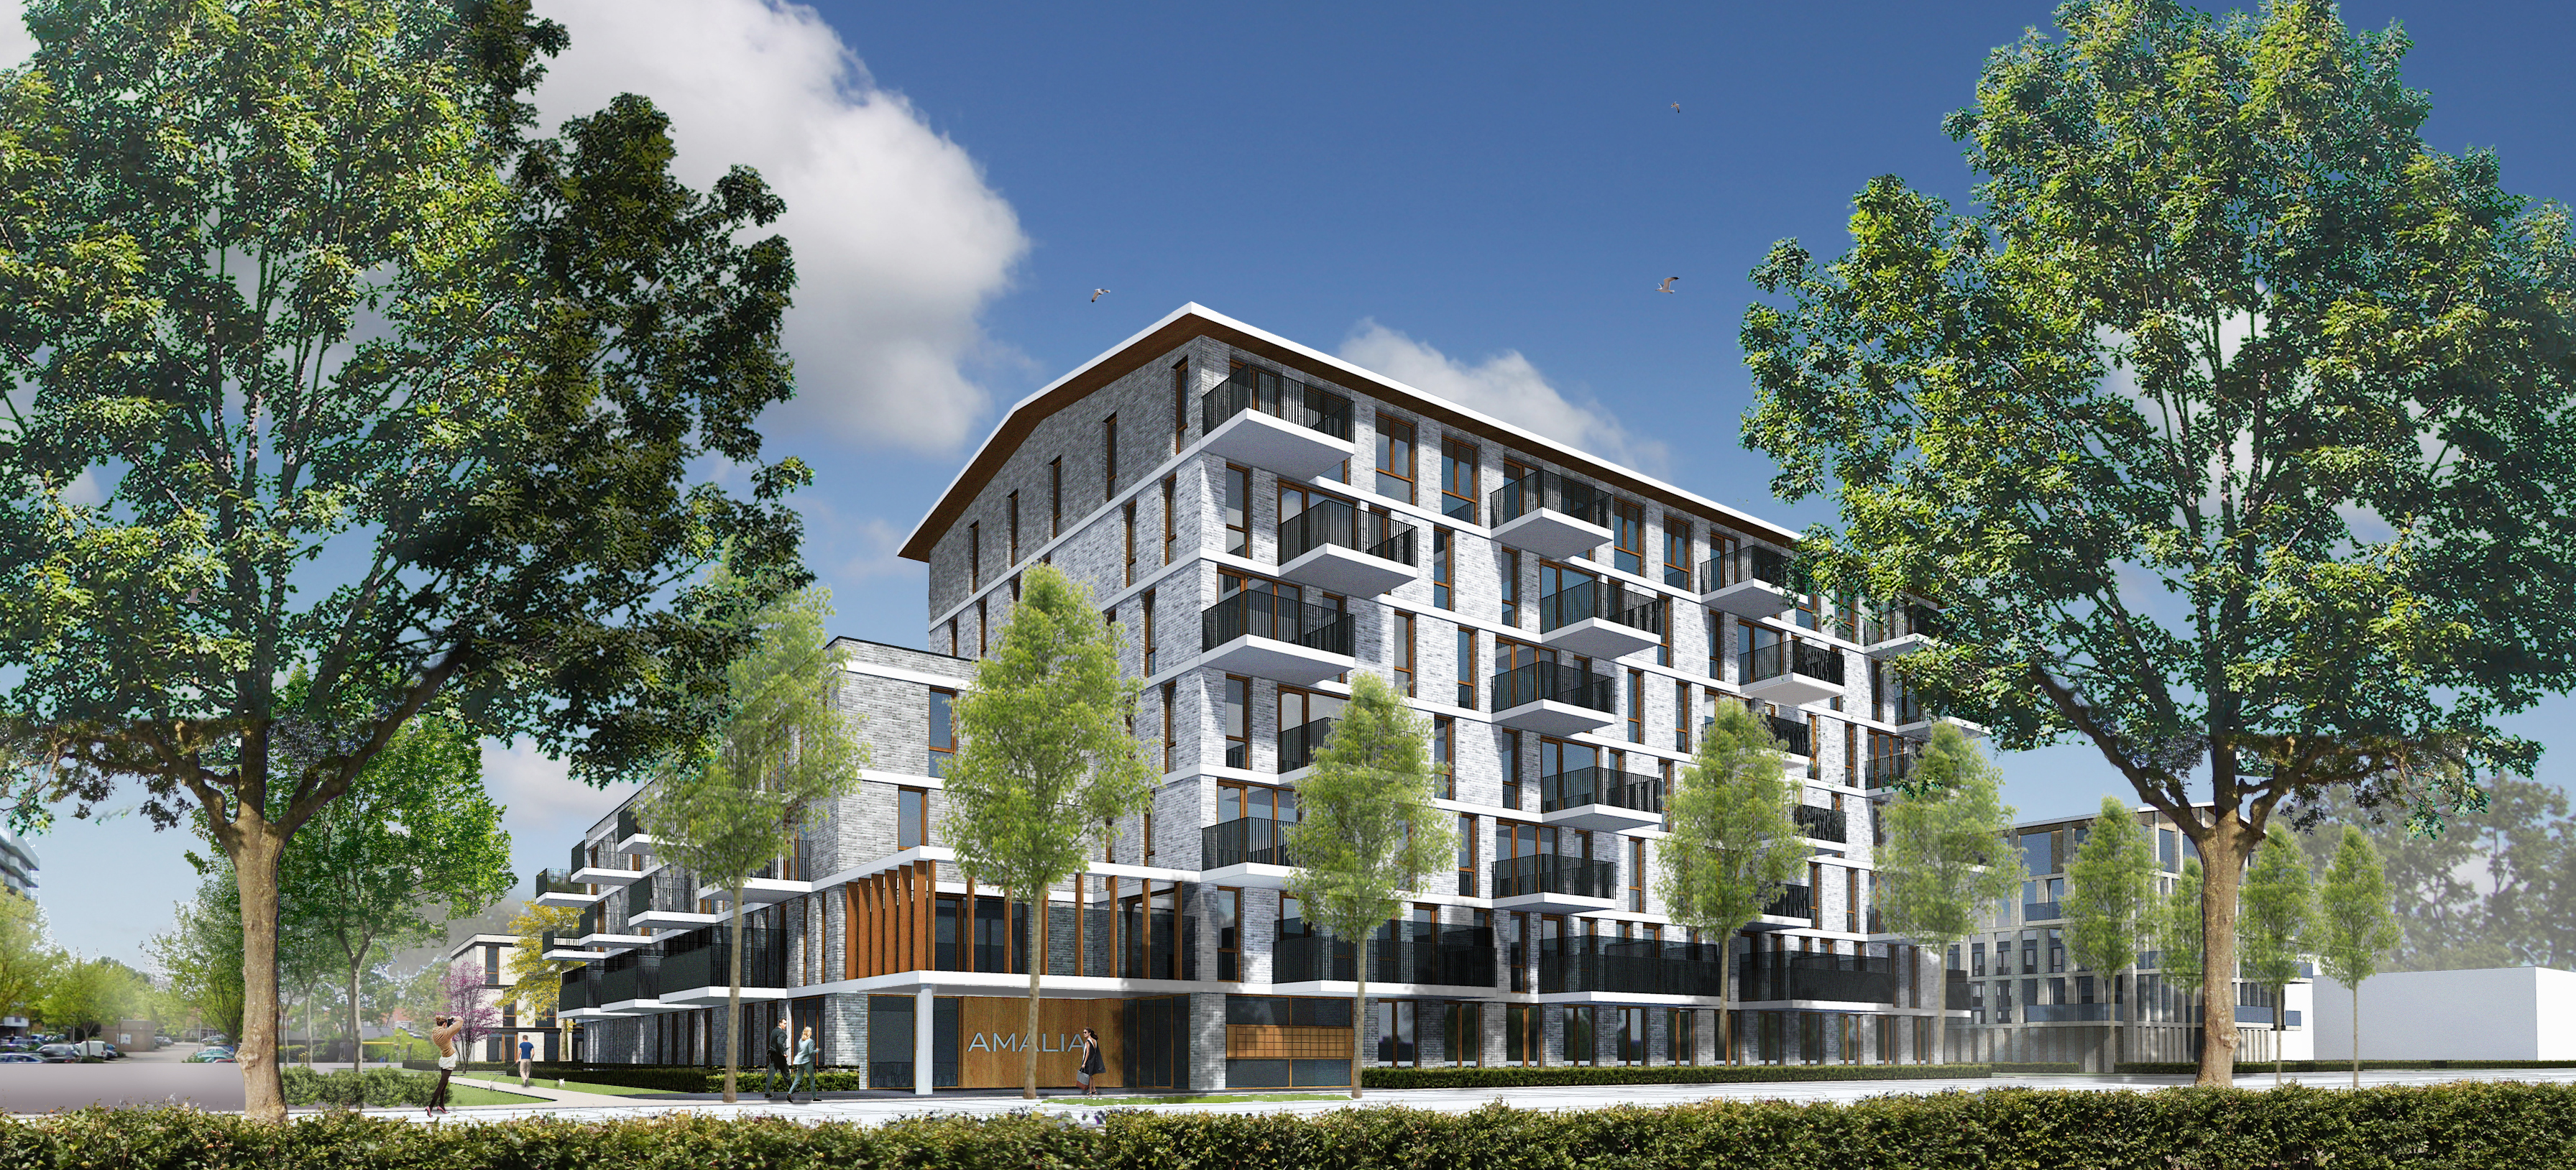 Met Prinsessenpark bouwt QuaWonen betaalbare appartementen in het centrum van Krimpen aan den IJssel. 